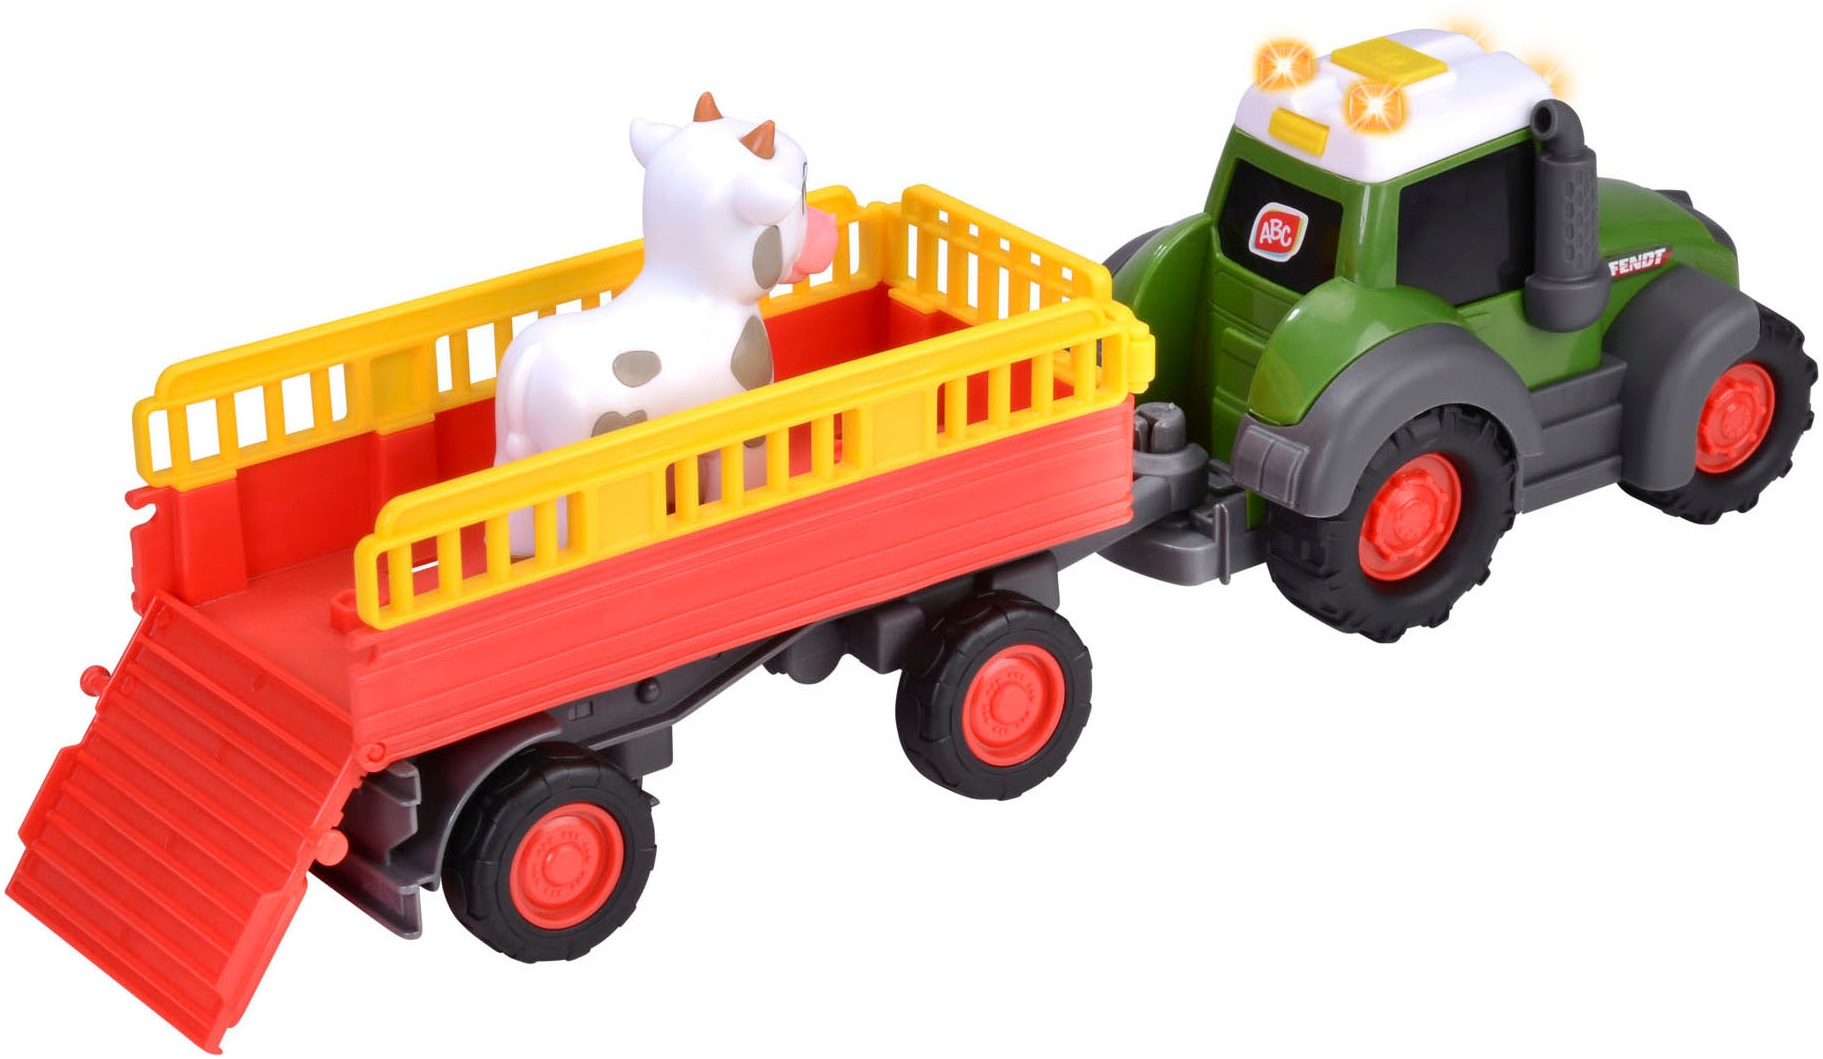 ABC Spielzeug-Traktor »ABC Fendti Animal Trailer«, mit Licht und Sound